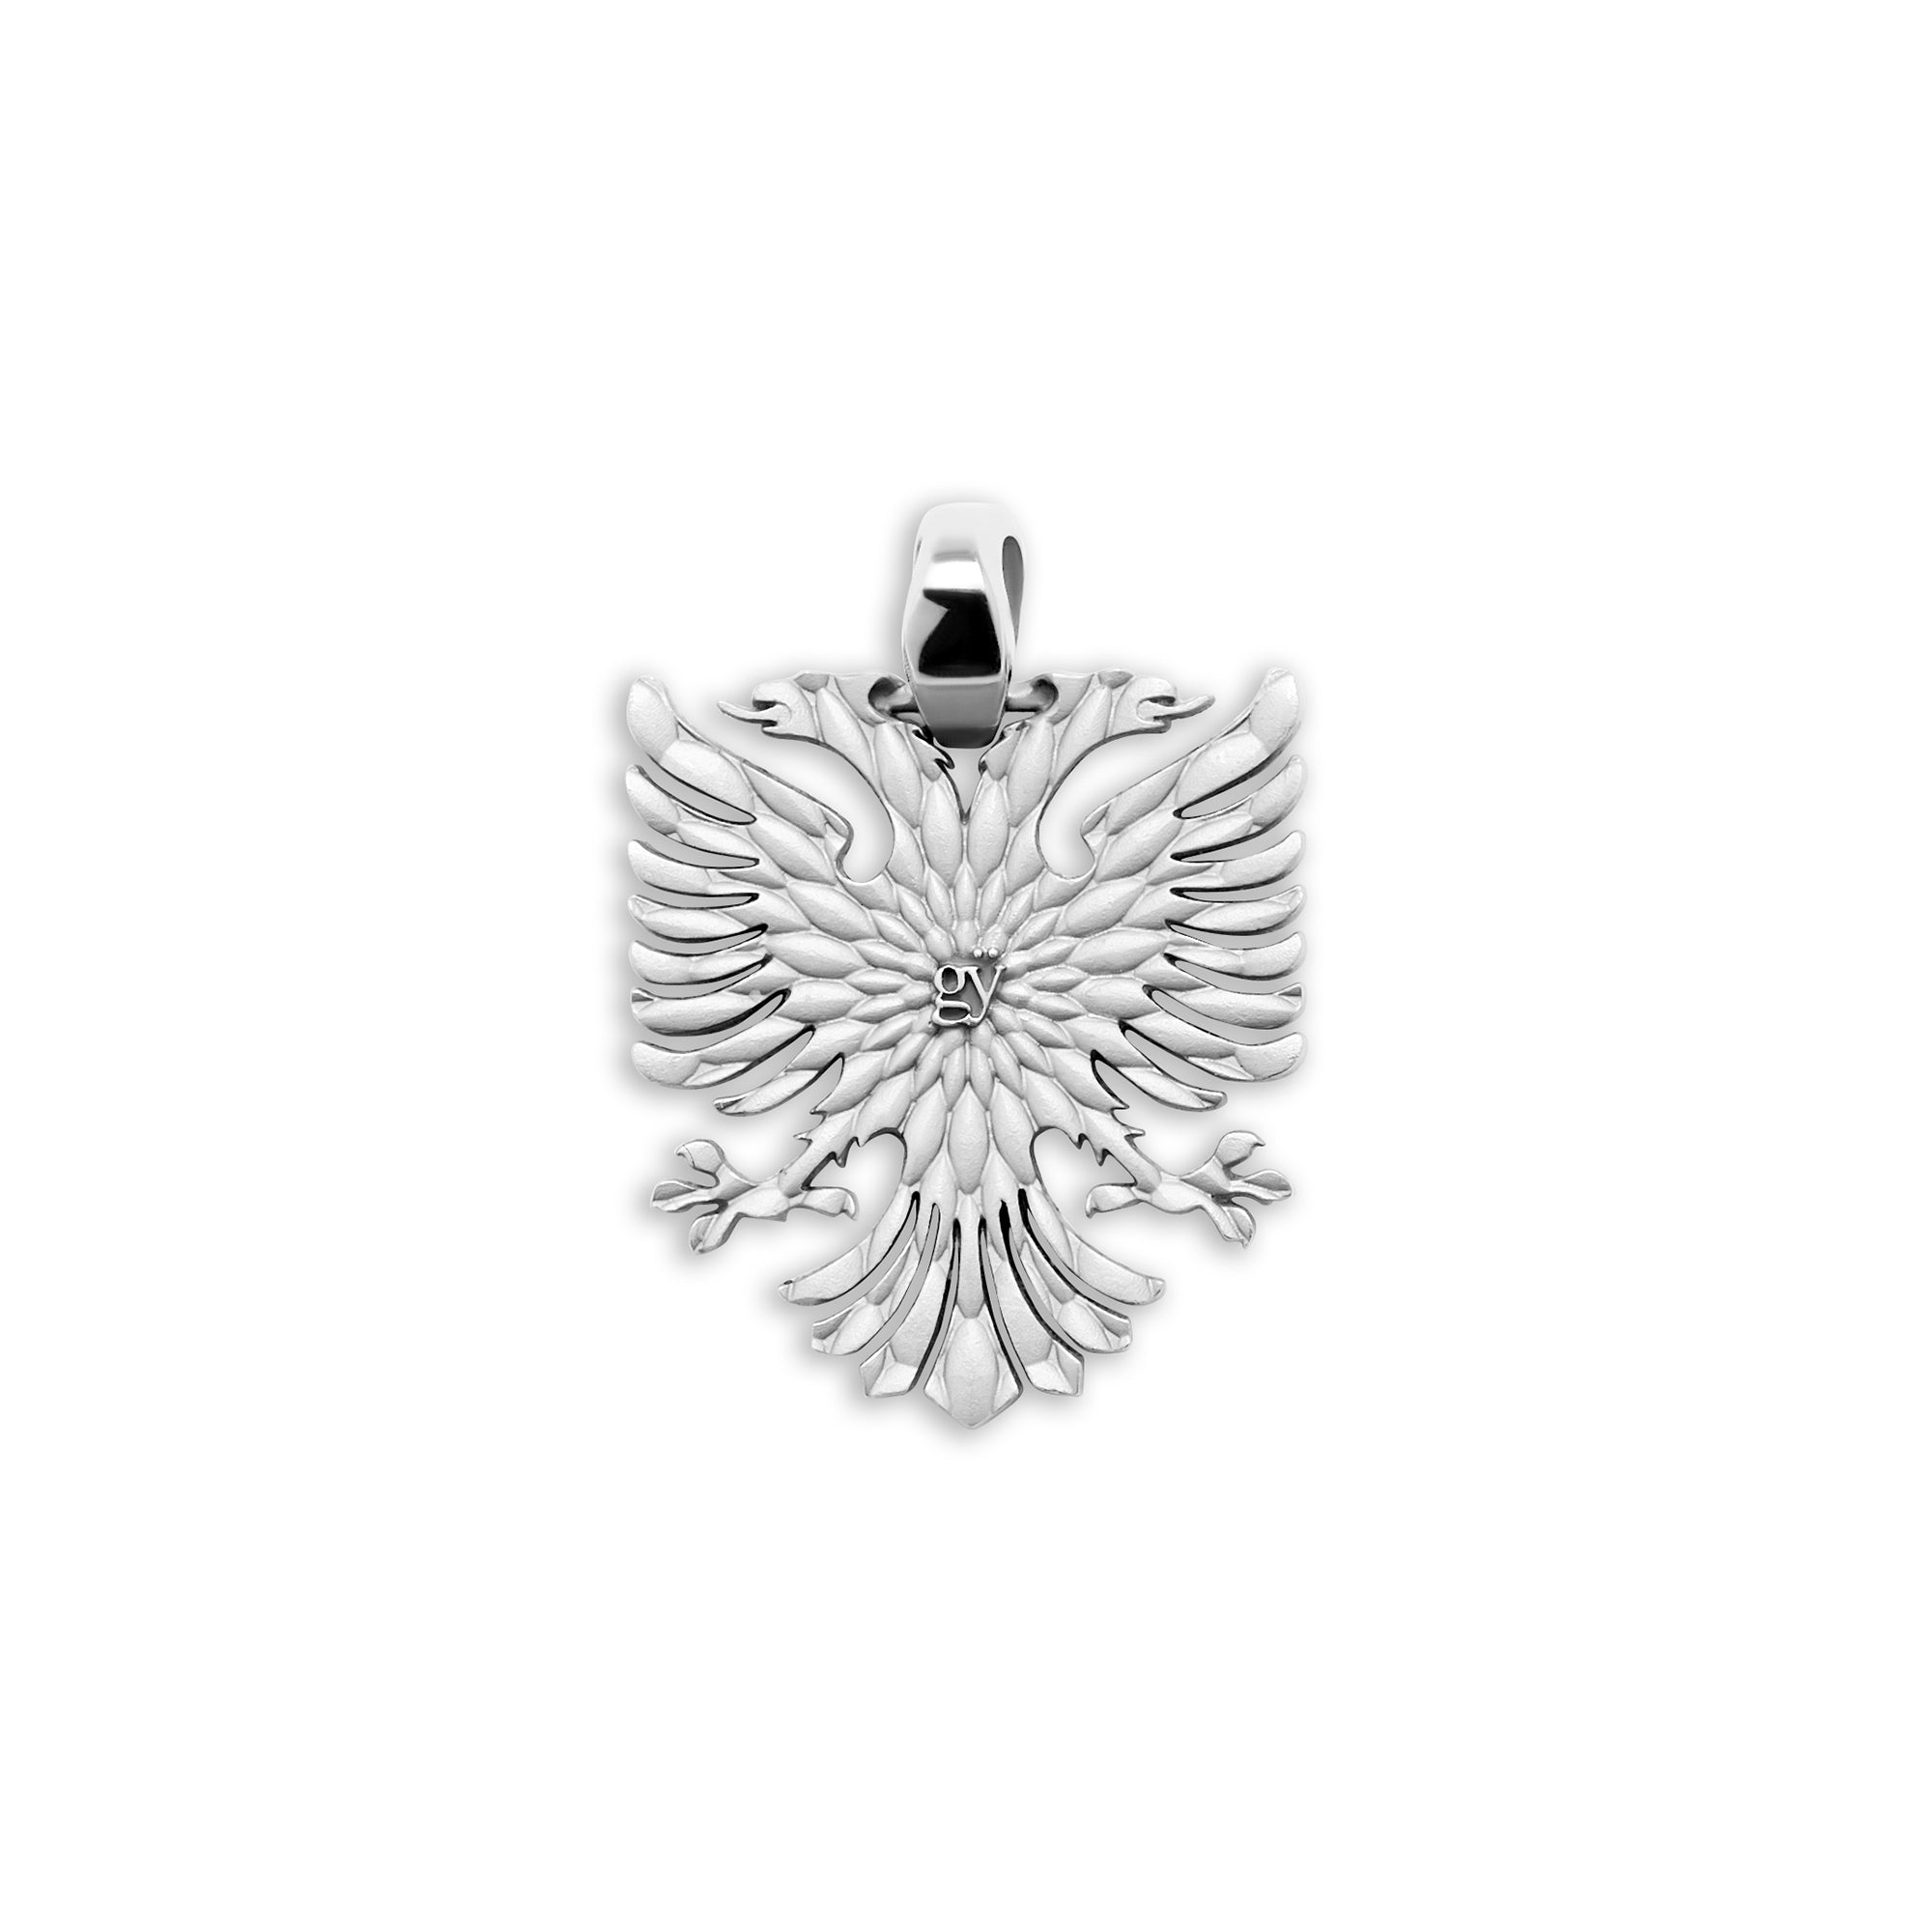 Albanian Eagle Pendant